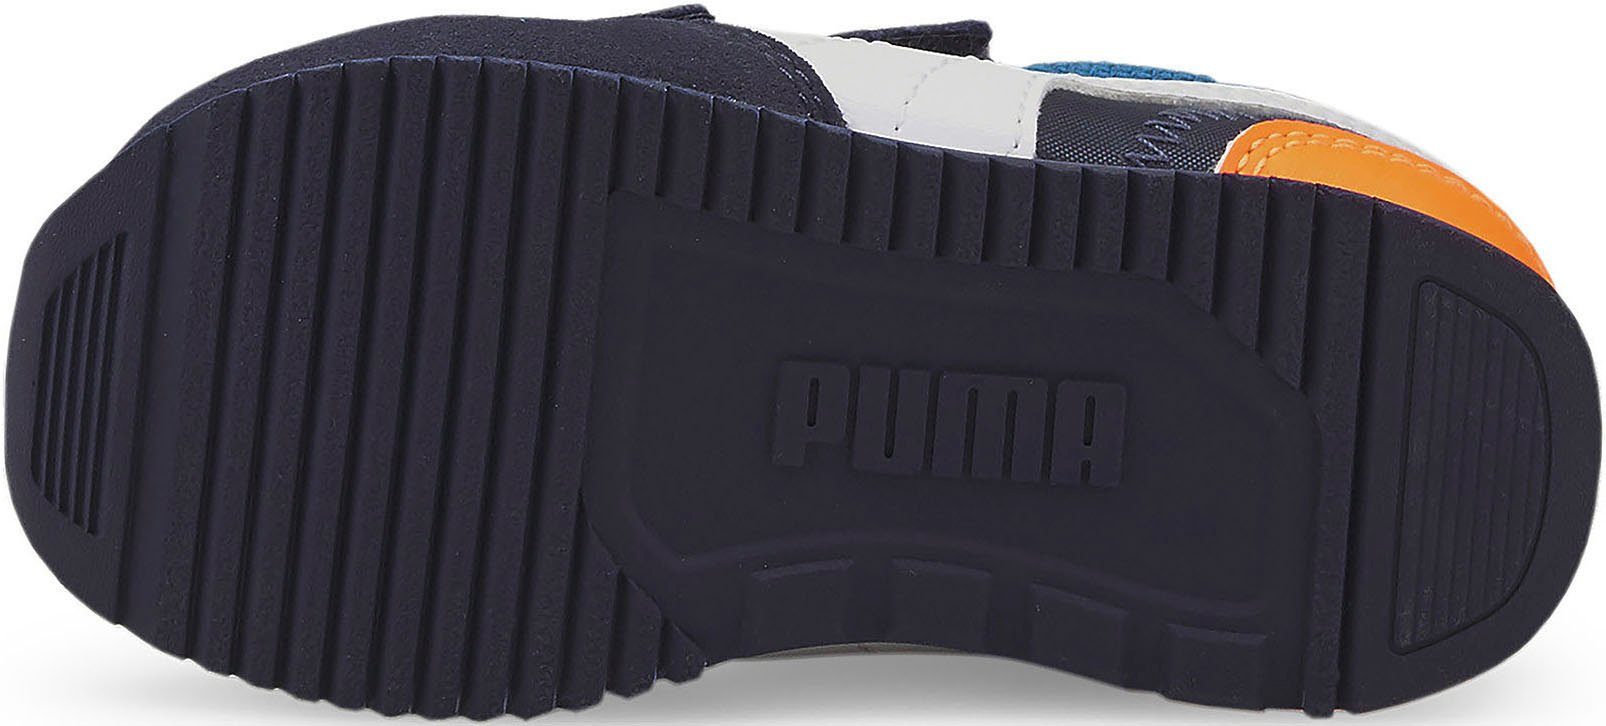 Schuhe Alle Sneaker PUMA Puma R78 V Inf Sneaker